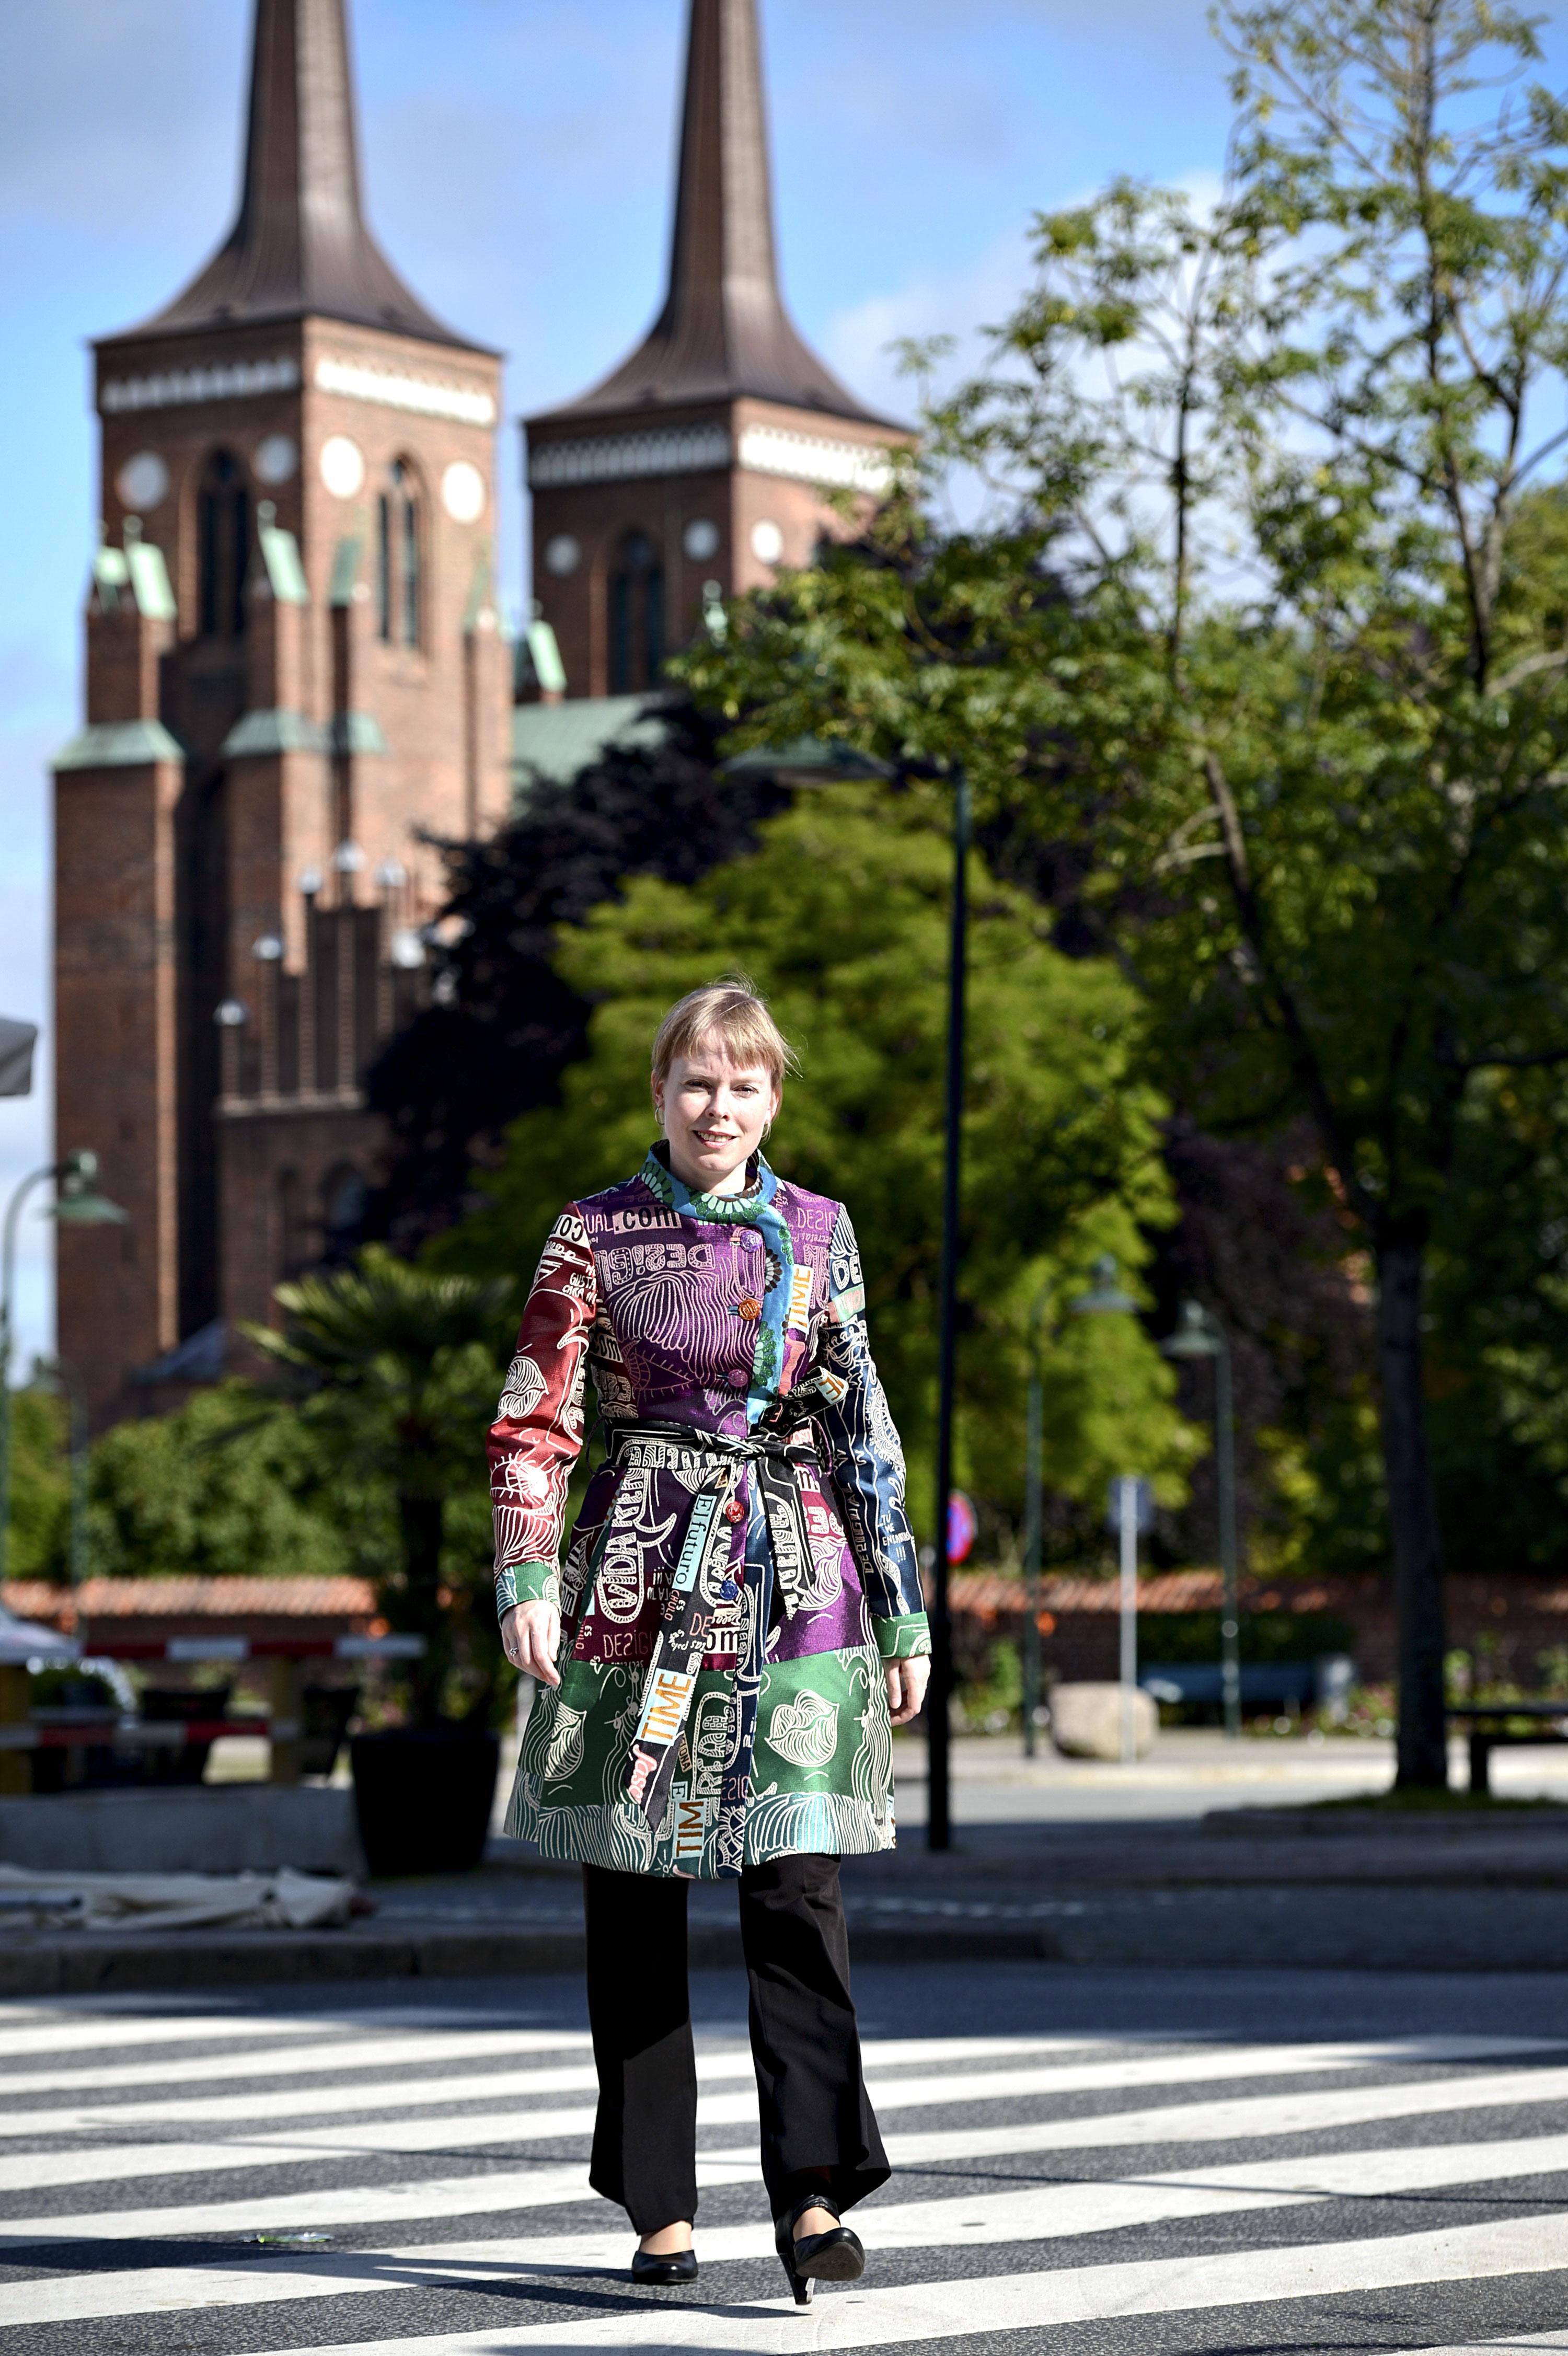 Joy Mogensen kalder ministeriets arbejde for useriøst og mangel på respekt for kommunernes arbejde.
Foto: Lars Krabbe / Polfoto